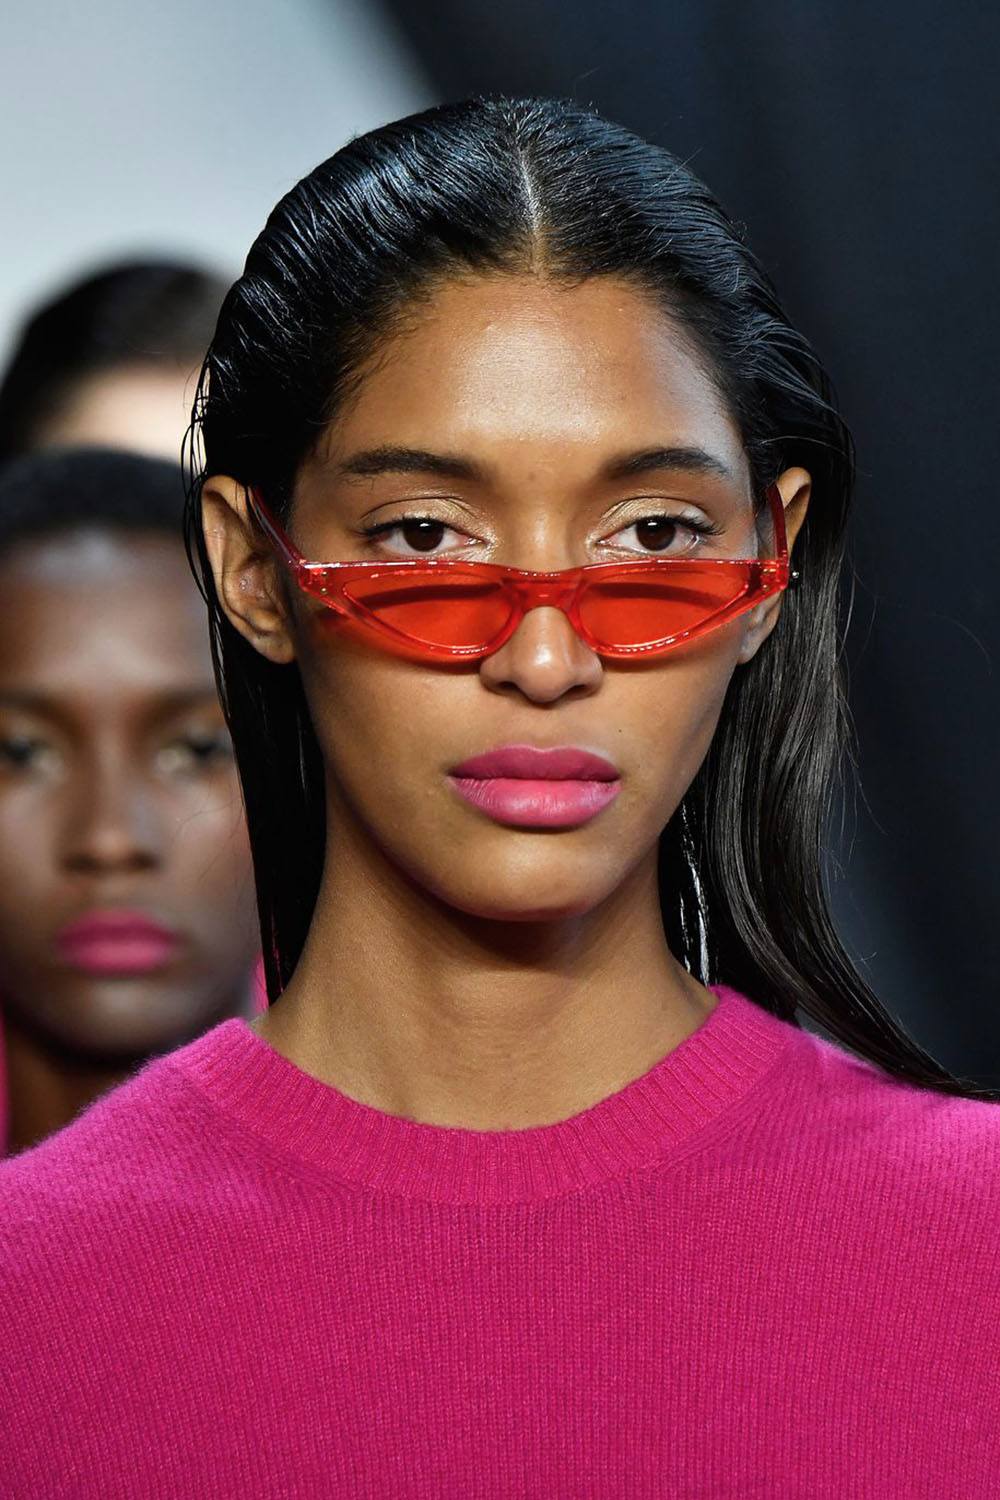 Модные солнцезащитные очки 2020: фотообзор стильных решений